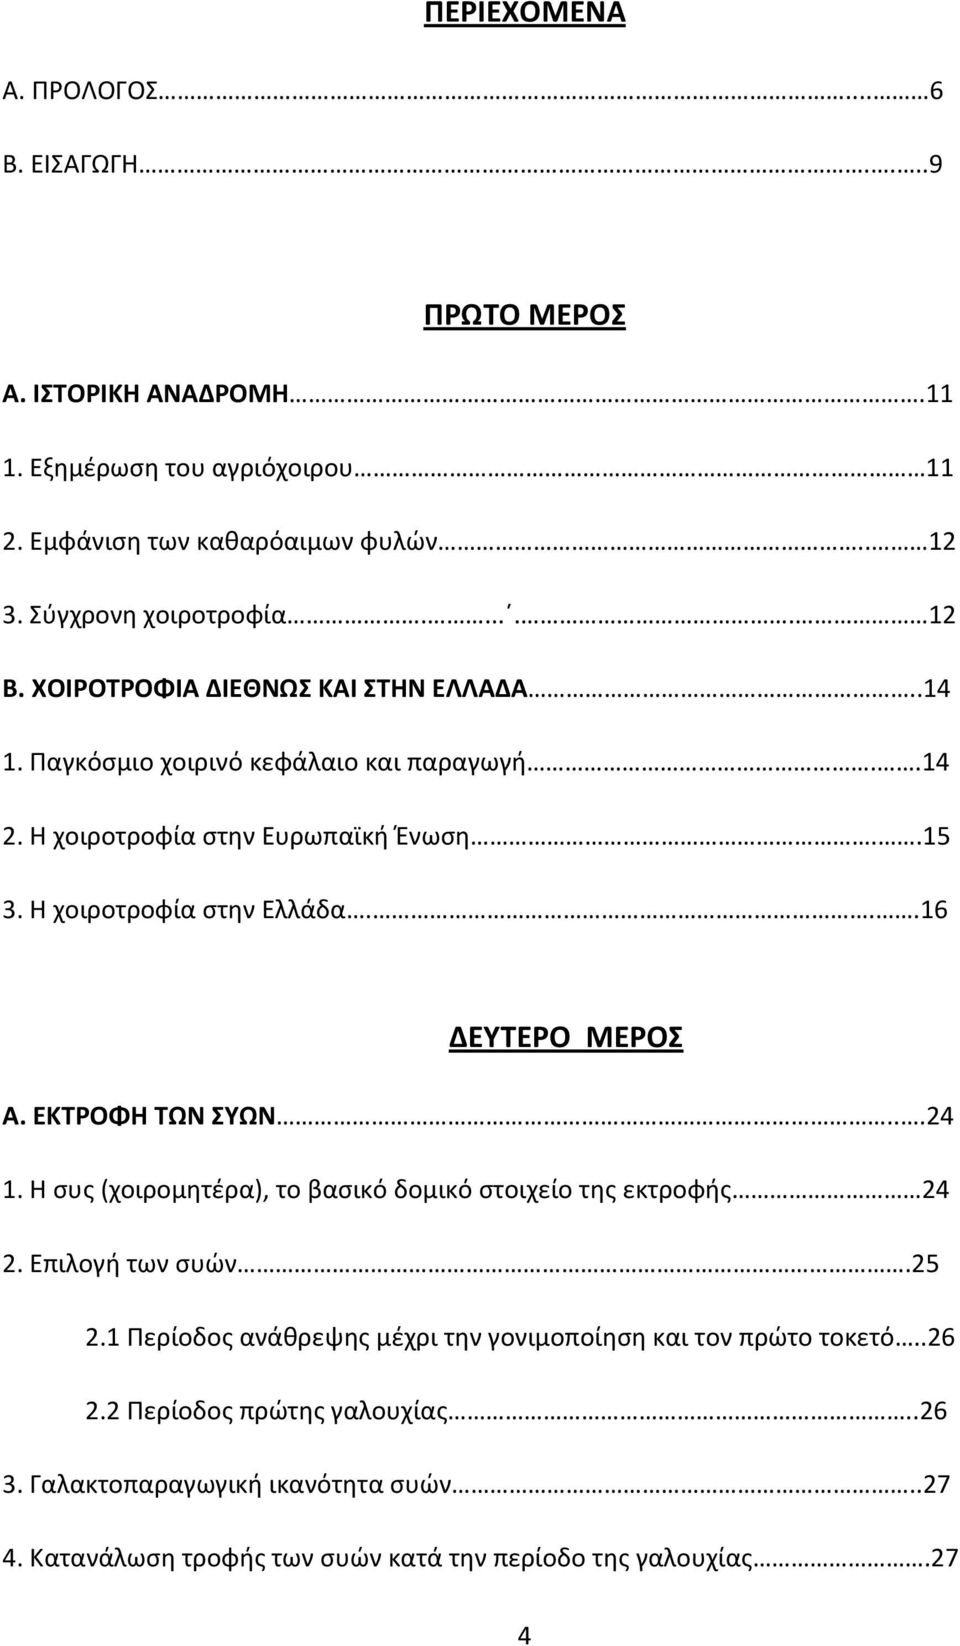 Η χοιροτροφία στην Ελλάδα...16 ΔΕΥΤΕΡΟ ΜΕΡΟΣ Α. ΕΚΤΡΟΦΗ ΤΩΝ ΣΥΩΝ...24 1. Η συς (χοιρομητέρα), το βασικό δομικό στοιχείο της εκτροφής 24 2. Επιλογή των συών.25 2.